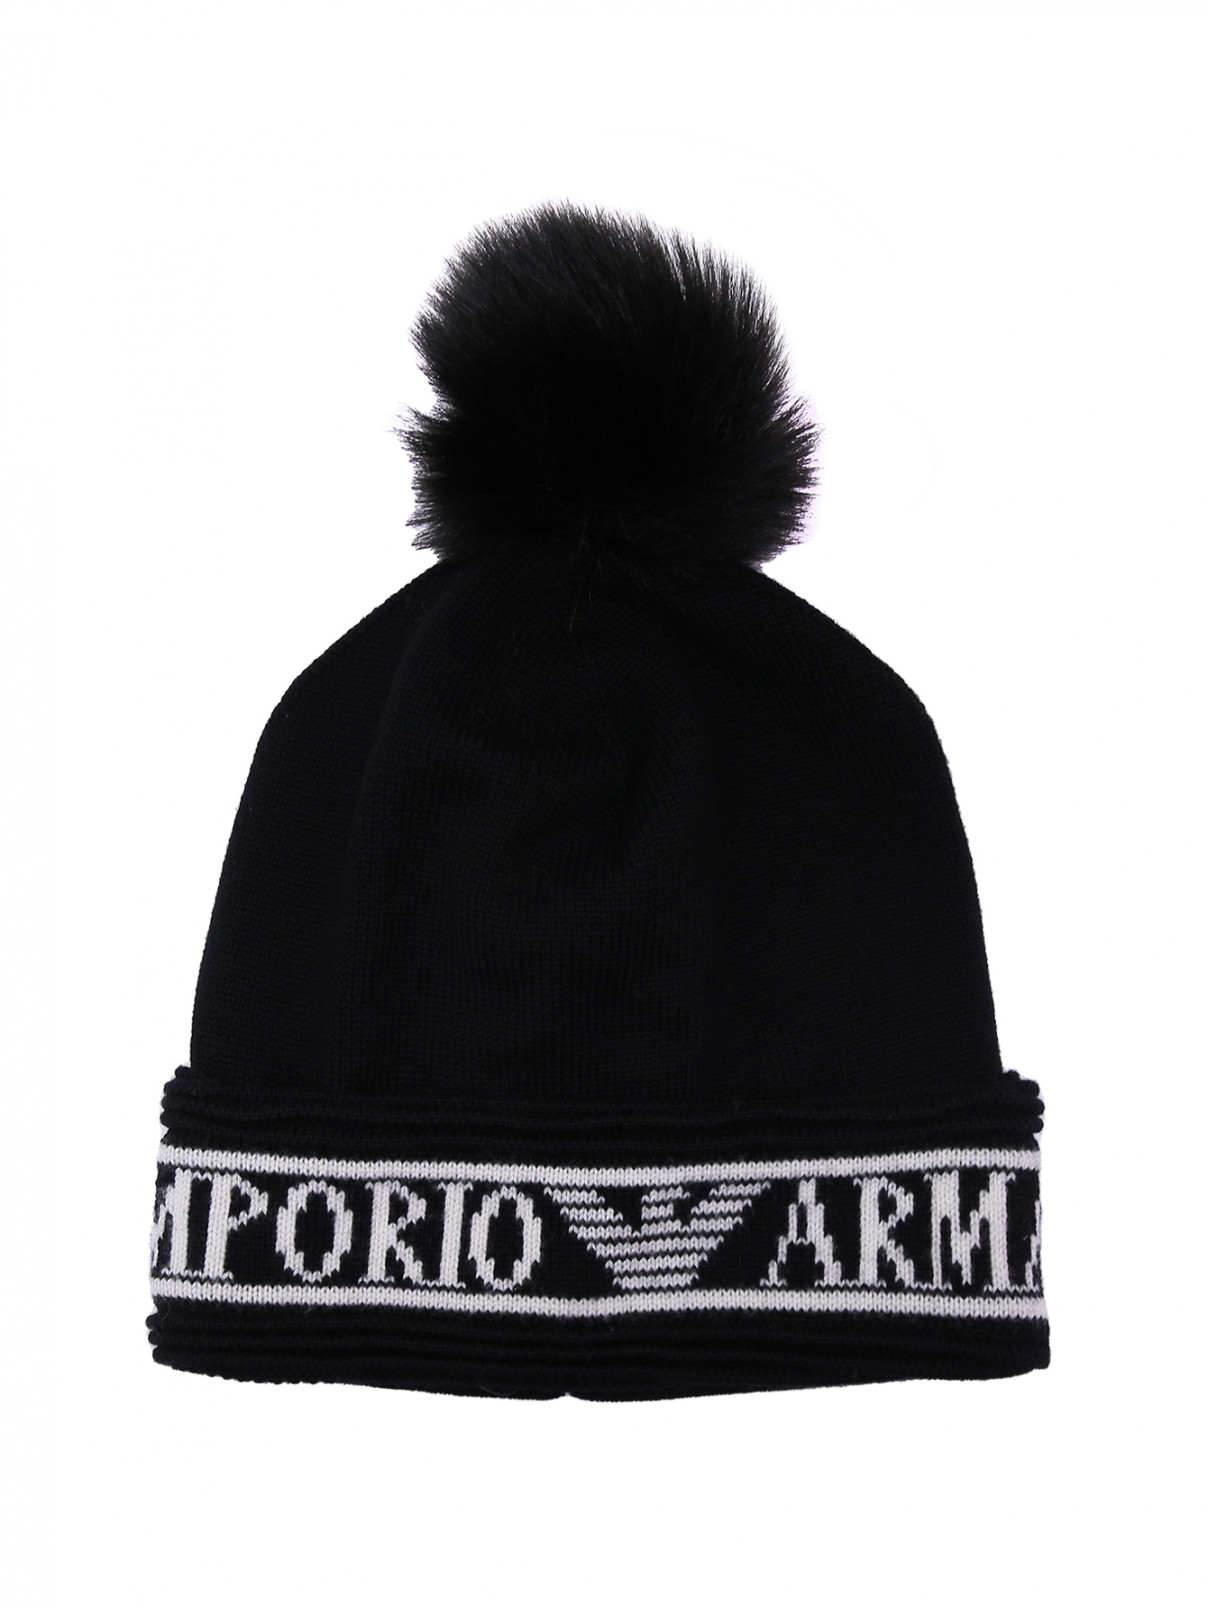 Комплект: шапка и шарф Emporio Armani  –  Общий вид  – Цвет:  Черный